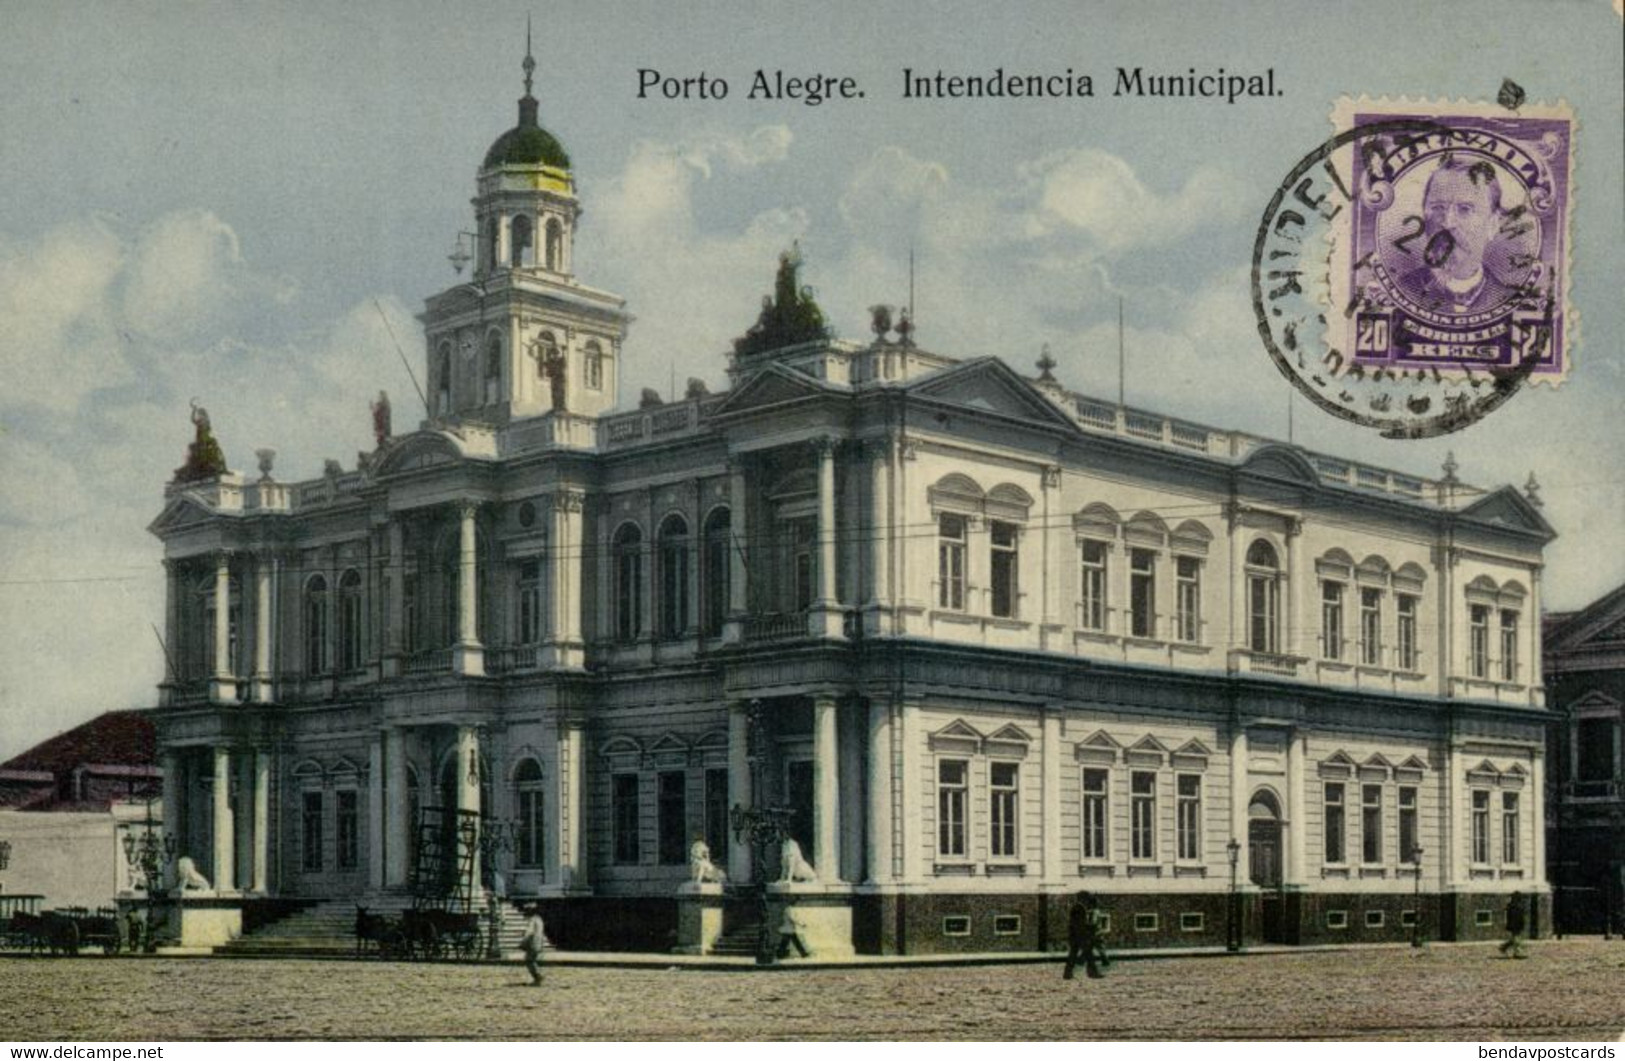 Brazil, PORTO ALEGRE, Intendencia Municipal (1910s) Postcard - Porto Alegre